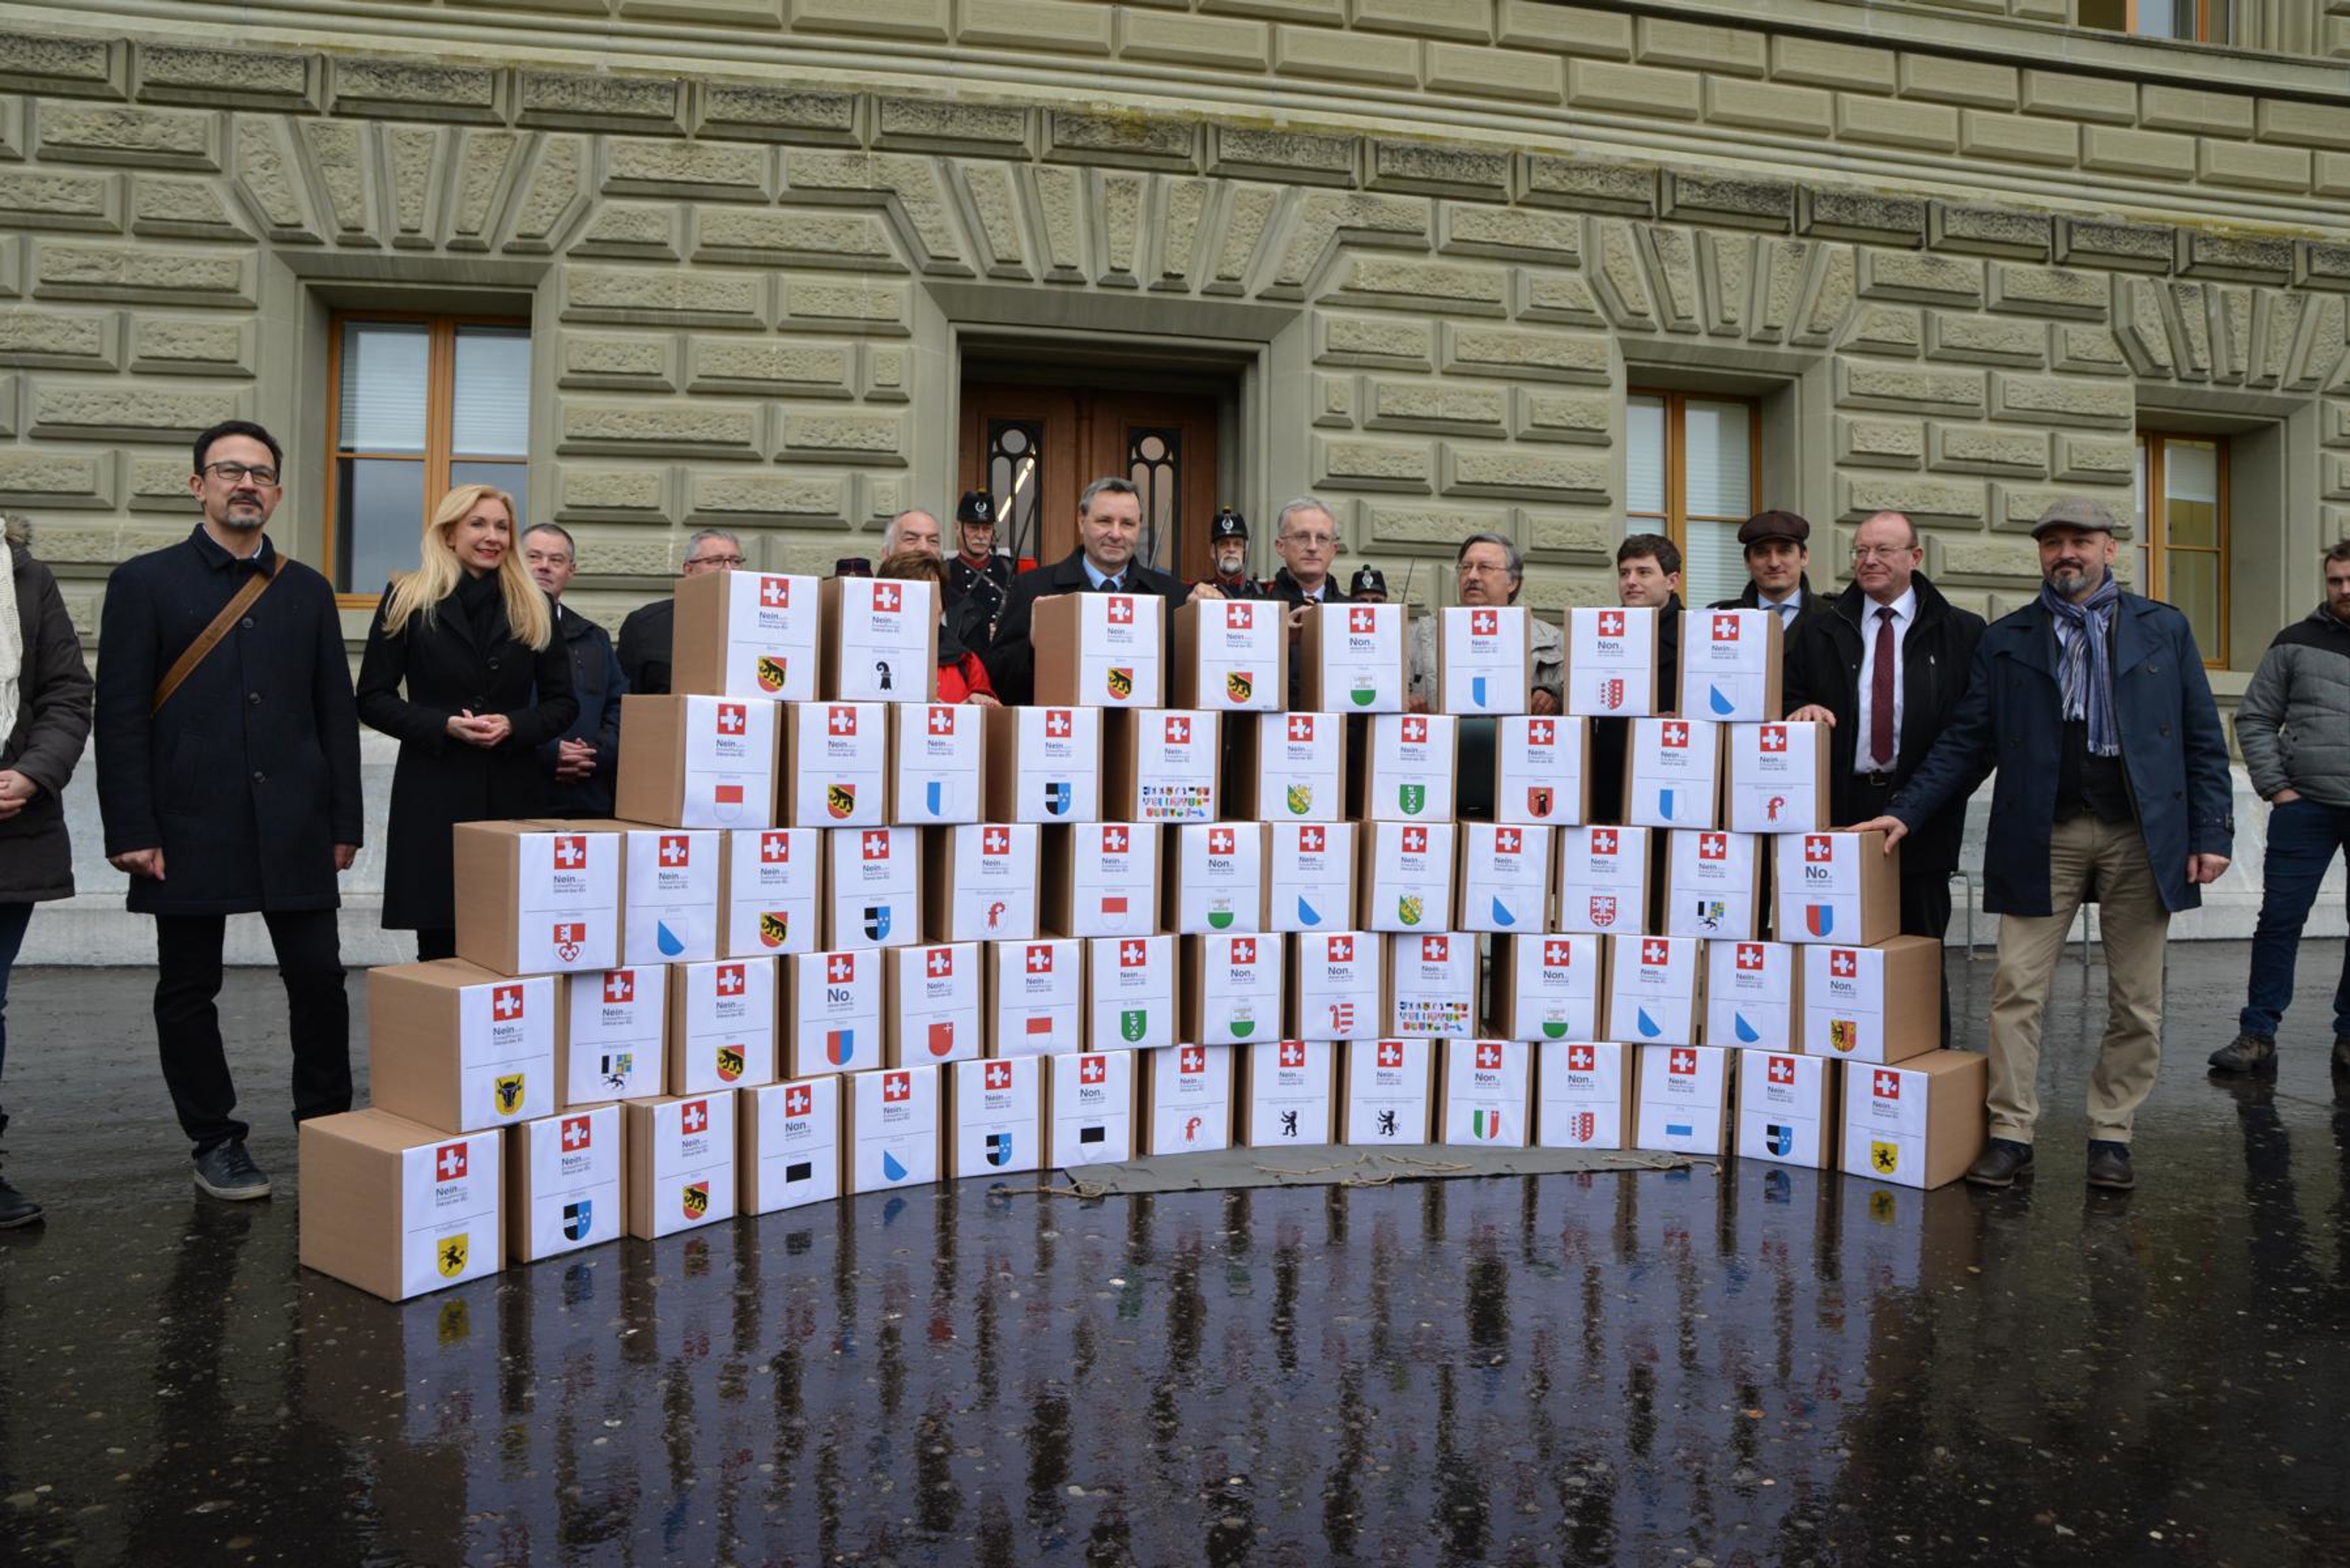 Il 17 gennaio la Comunità d’interessi tiro svizzera ha consegnato alla Cancelleria federale più di 125'000 firme per il Referendum contro le modifiche alla legge sulle armi e la ripresa della direttiva UE sulle armi.